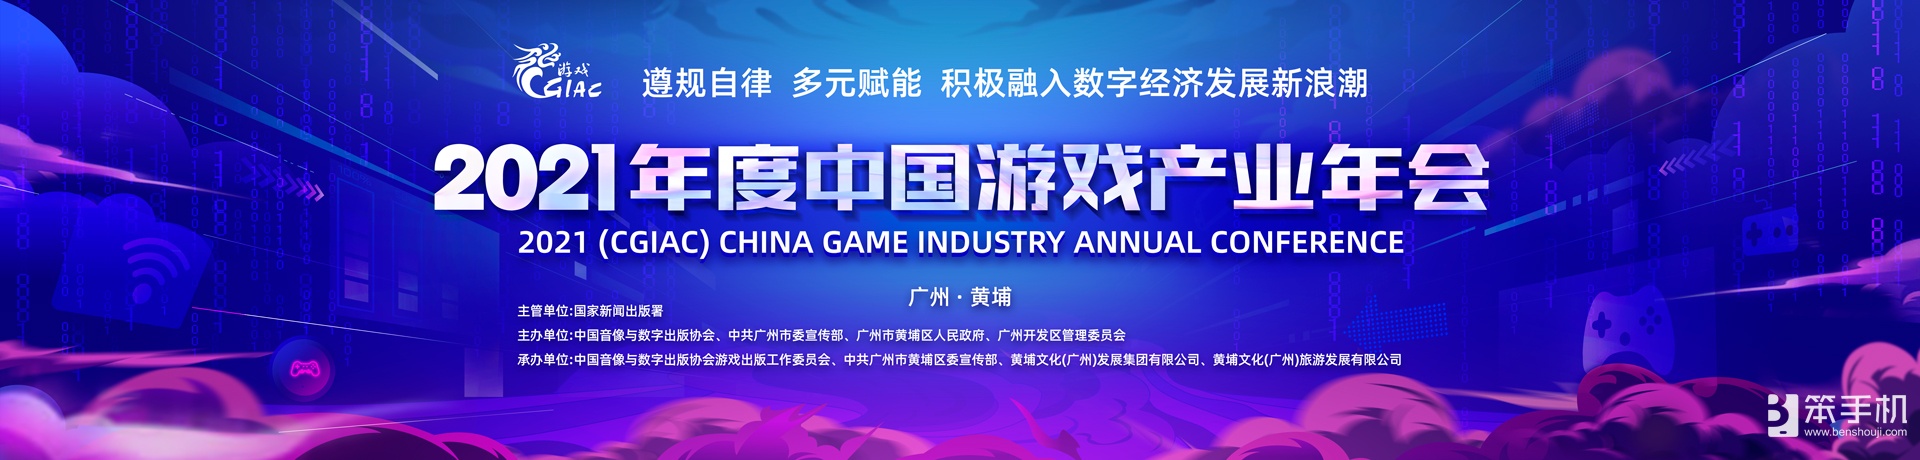 2021年度中國游戲產業年會12月14日廣州舉辦